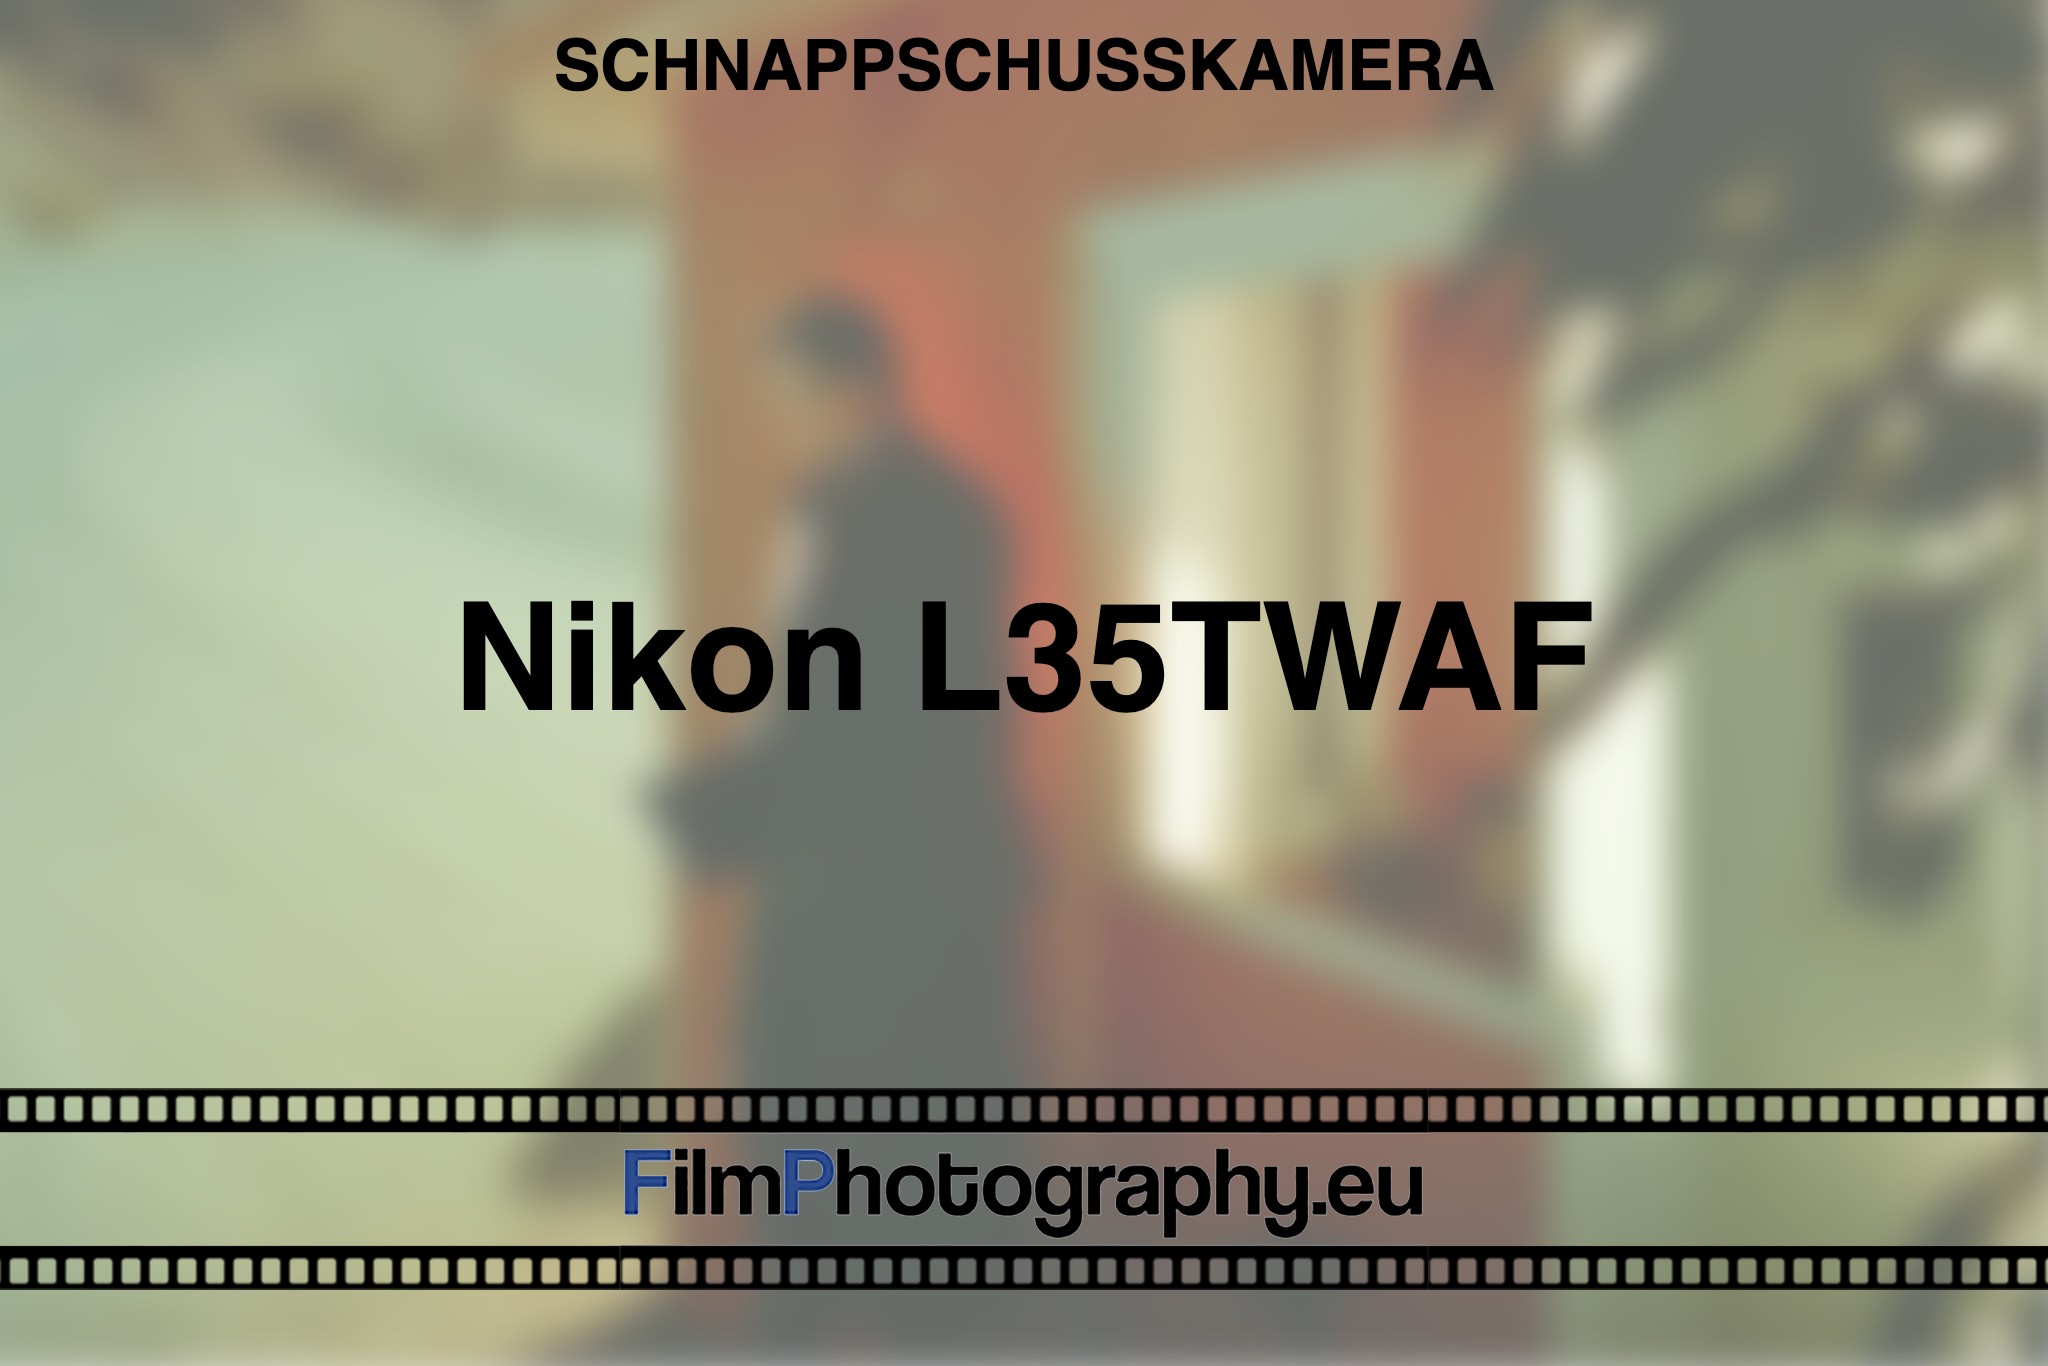 nikon-l35twaf-schnappschusskamera-bnv